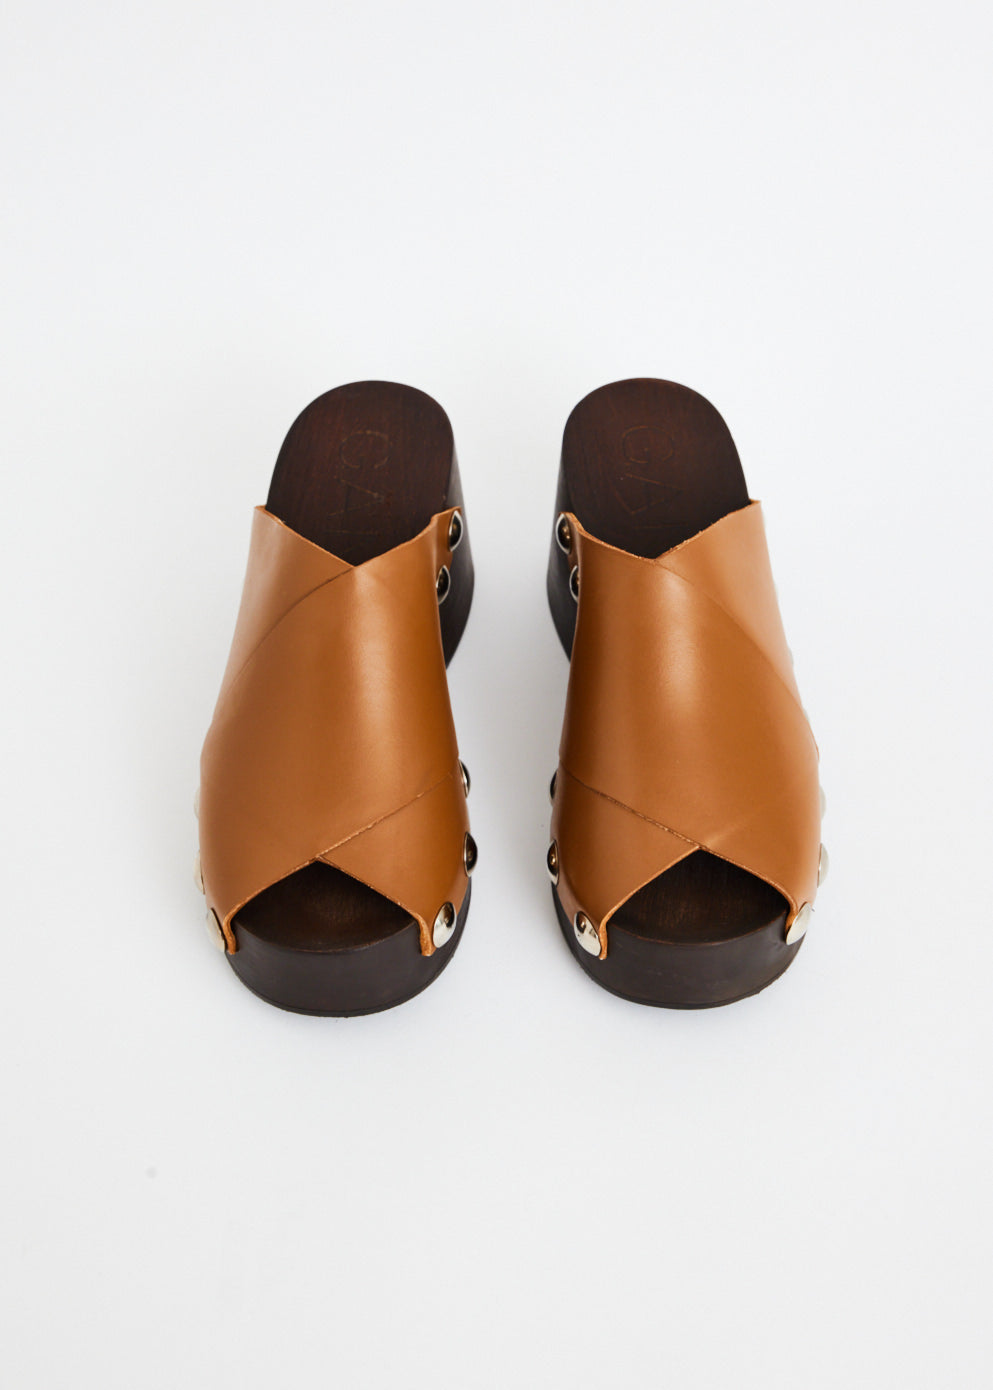 Retro Peep Toe Wood Sandal